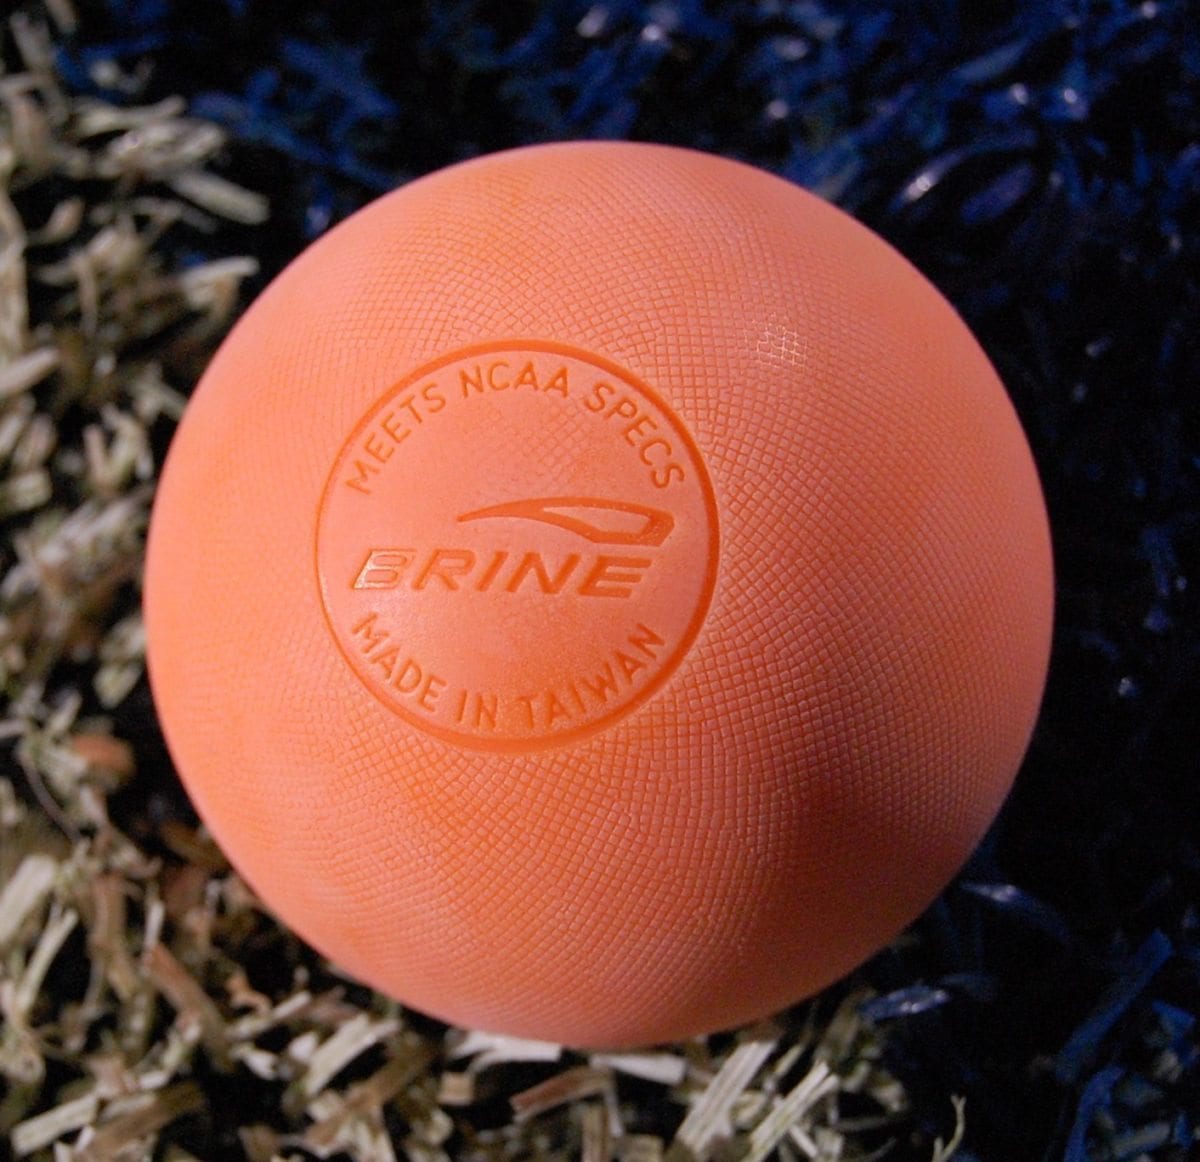 mll lacrosse ball by Brine lacrosse